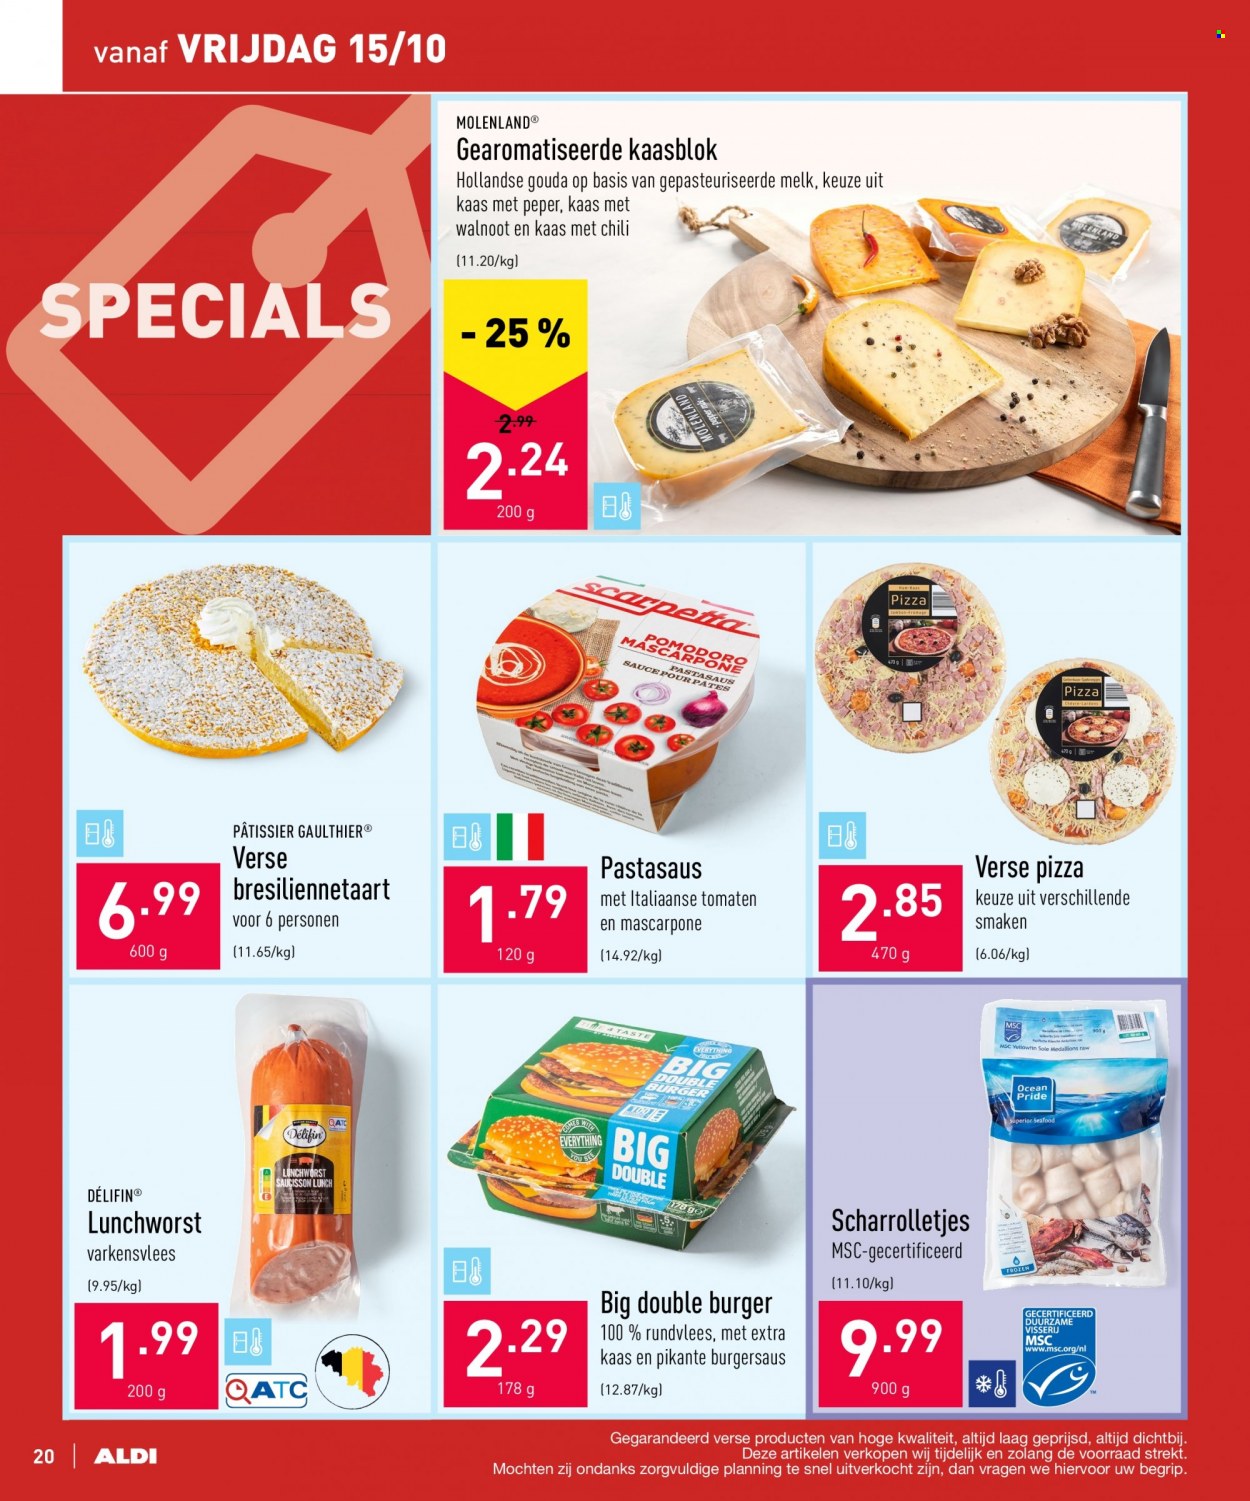 thumbnail - ALDI-aanbieding - 11/10/2021 - 22/10/2021 -  producten in de aanbieding - varkensvlees, rundvlees, pizza, kaas, Mascarpone, gouda, melk. Pagina 20.